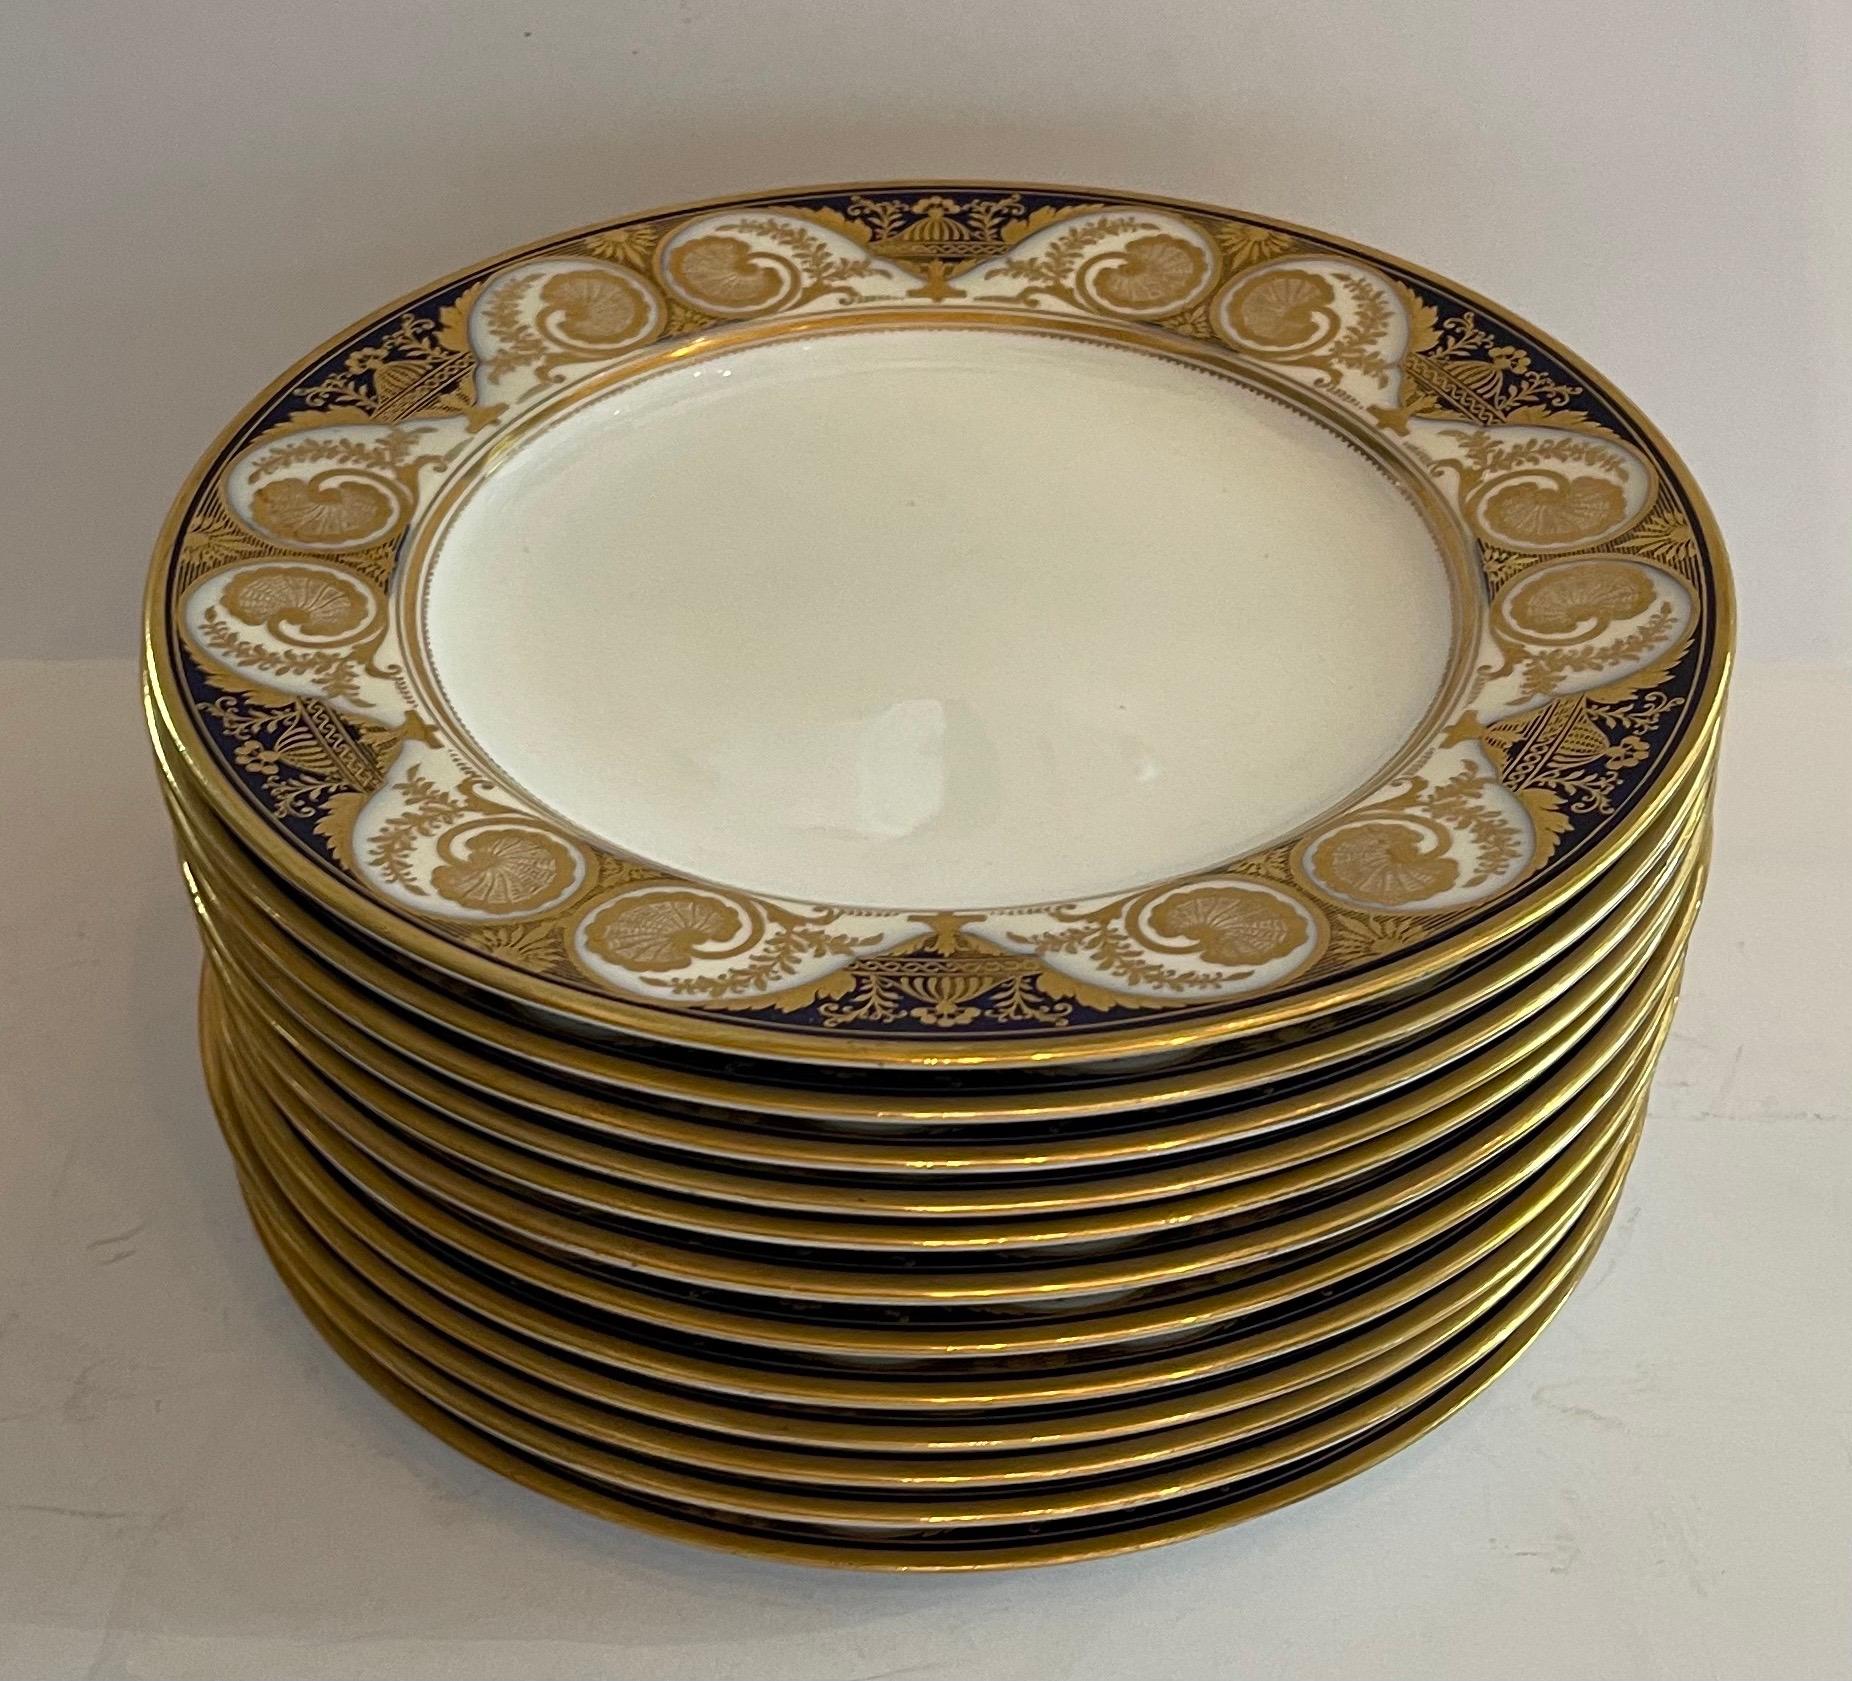 Regency Wonderful 12 Spode English Fine Porcelain Dinner Service Plates Cobalt Blue Gold